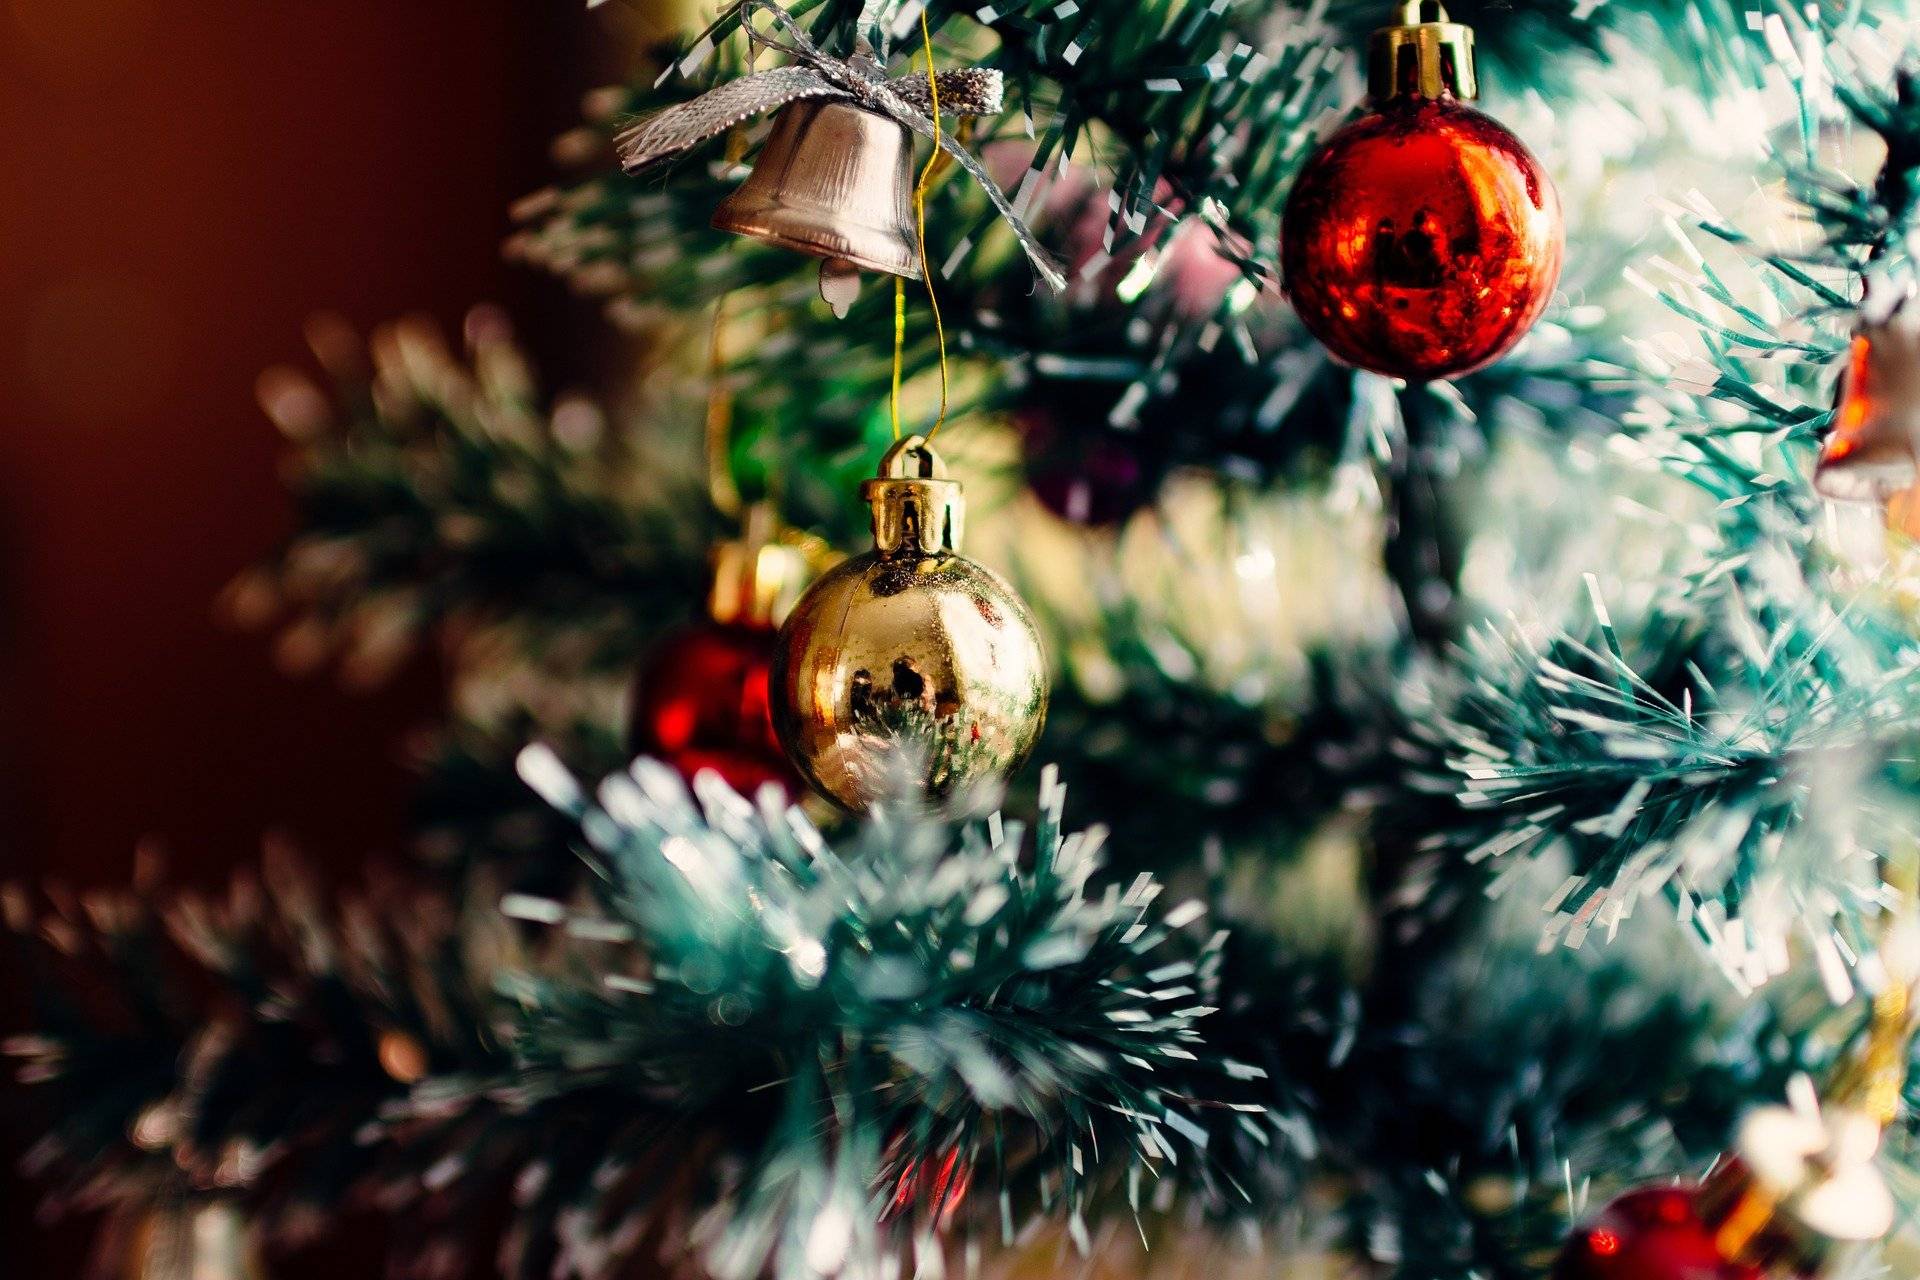 Abholung der Weihnachtsbäume ab 7. Januar: Raus mit dem Weihnachtsbaum